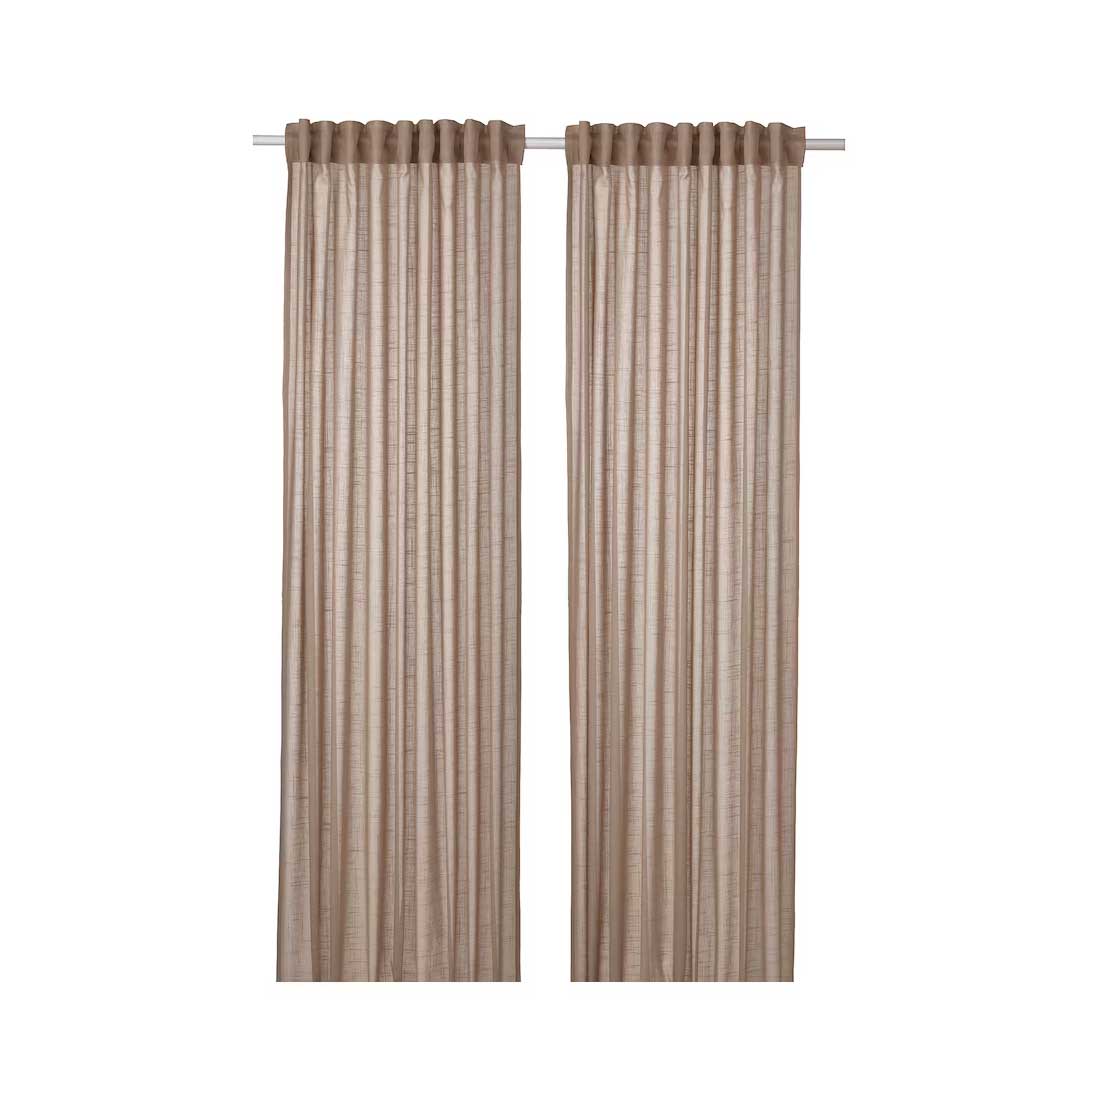 Silverloenn sheer curtains 1 pair